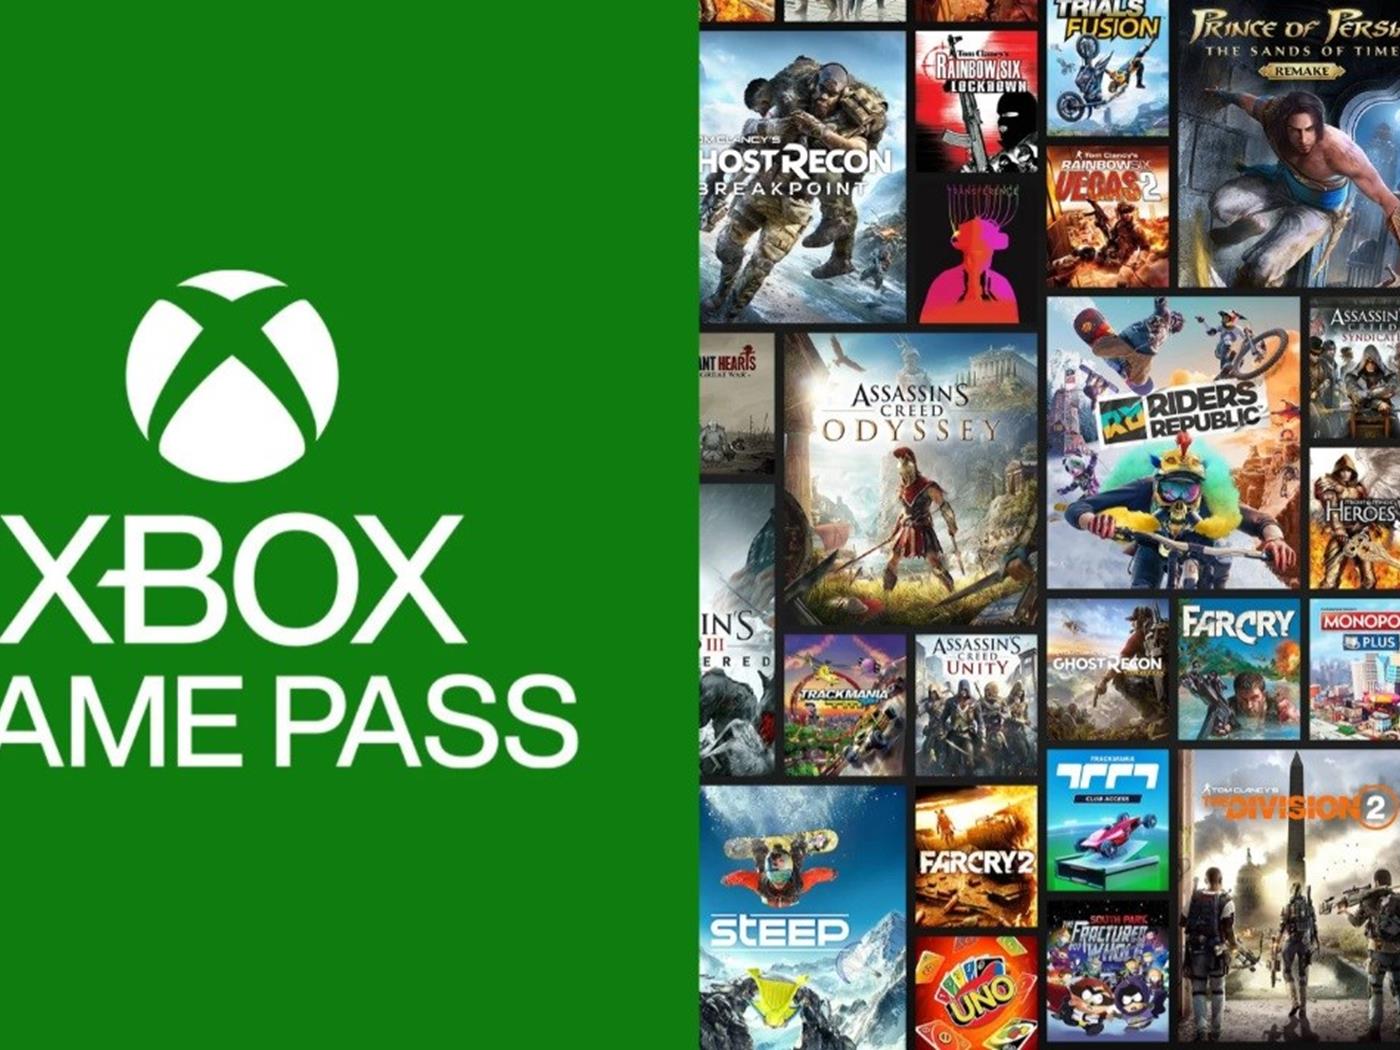 Xbox game турция. Xbox Ultimate Pass игры. Xbox Ultimate Pass список игр. Гаме пасс для иксбокс игры. Икс бокс гейм пасс список игр.